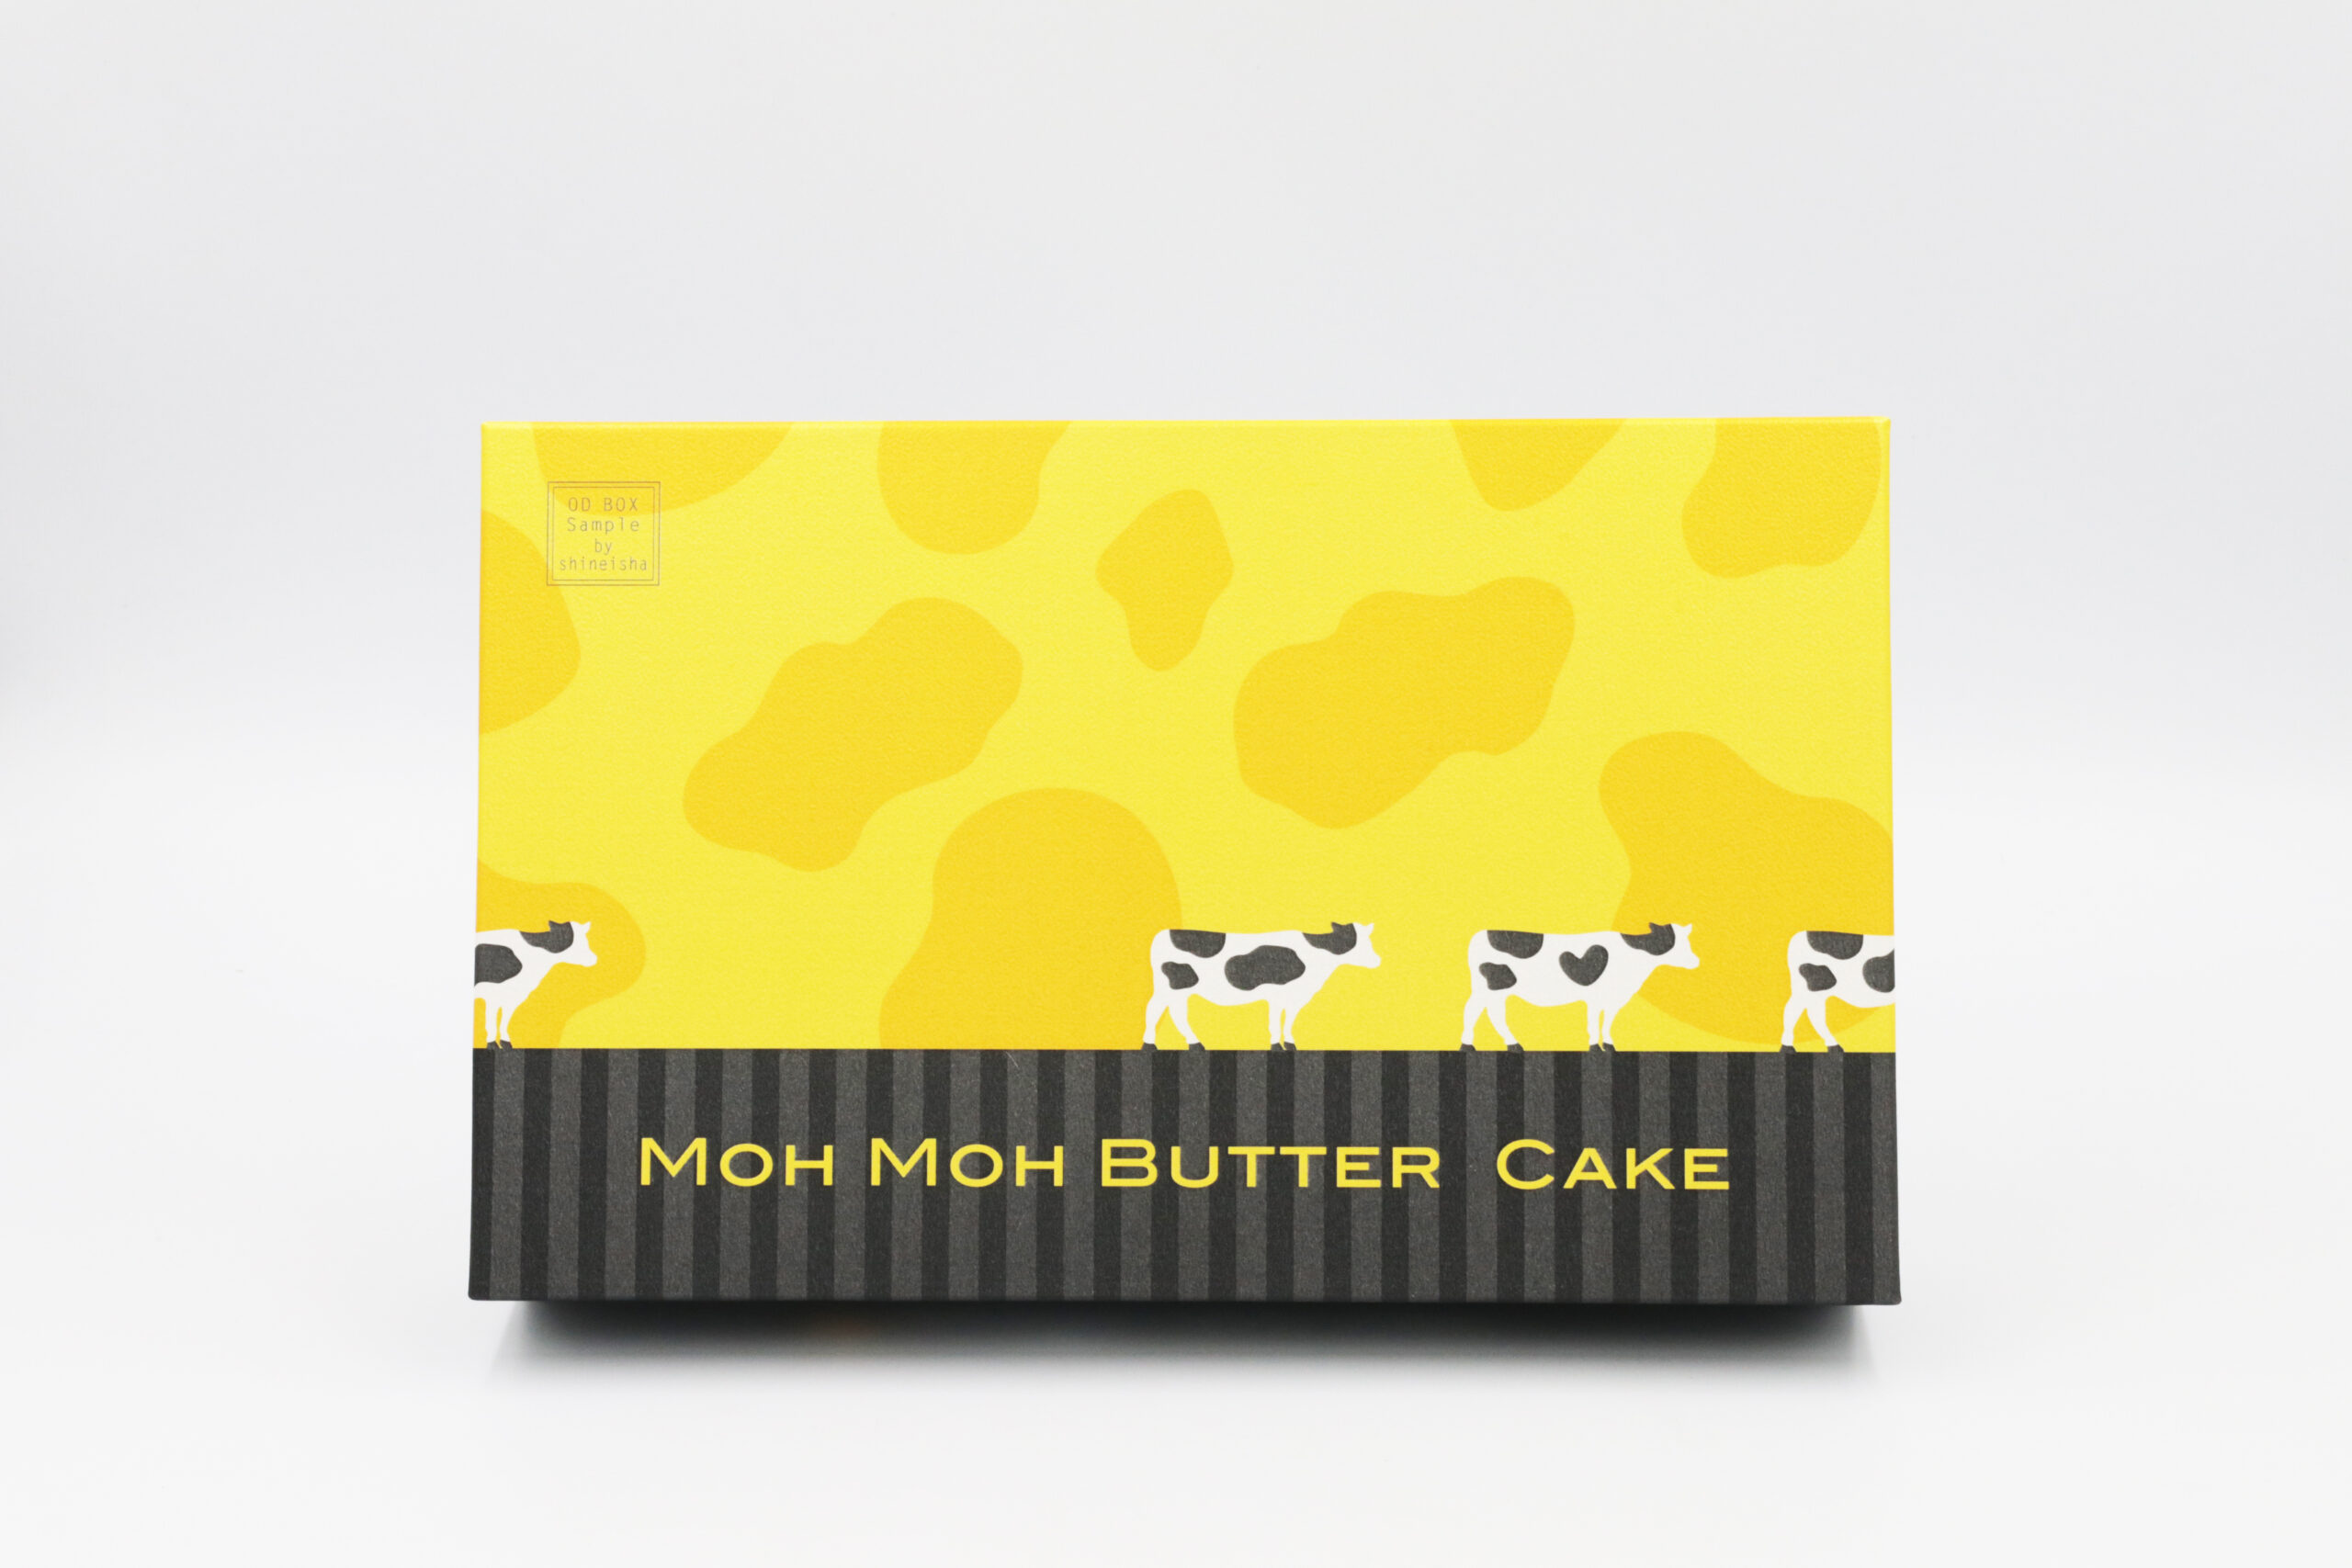 Moh Moh Butter Cake